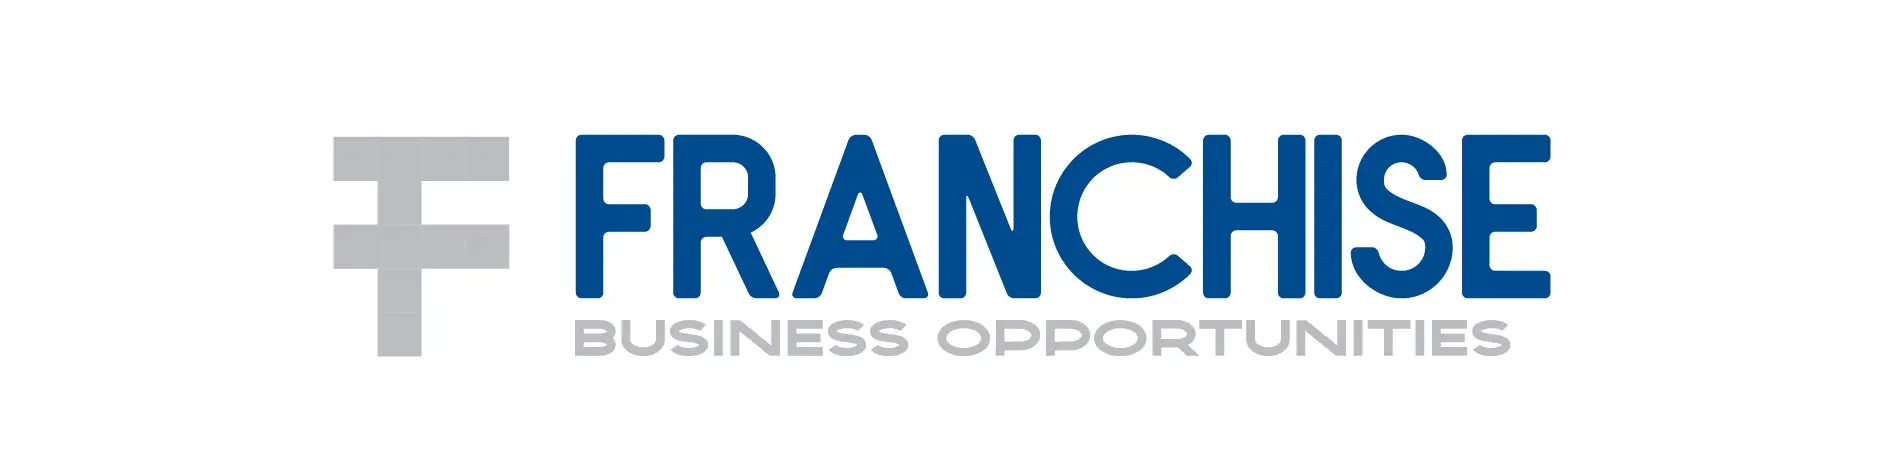 Franchise_Logo-01